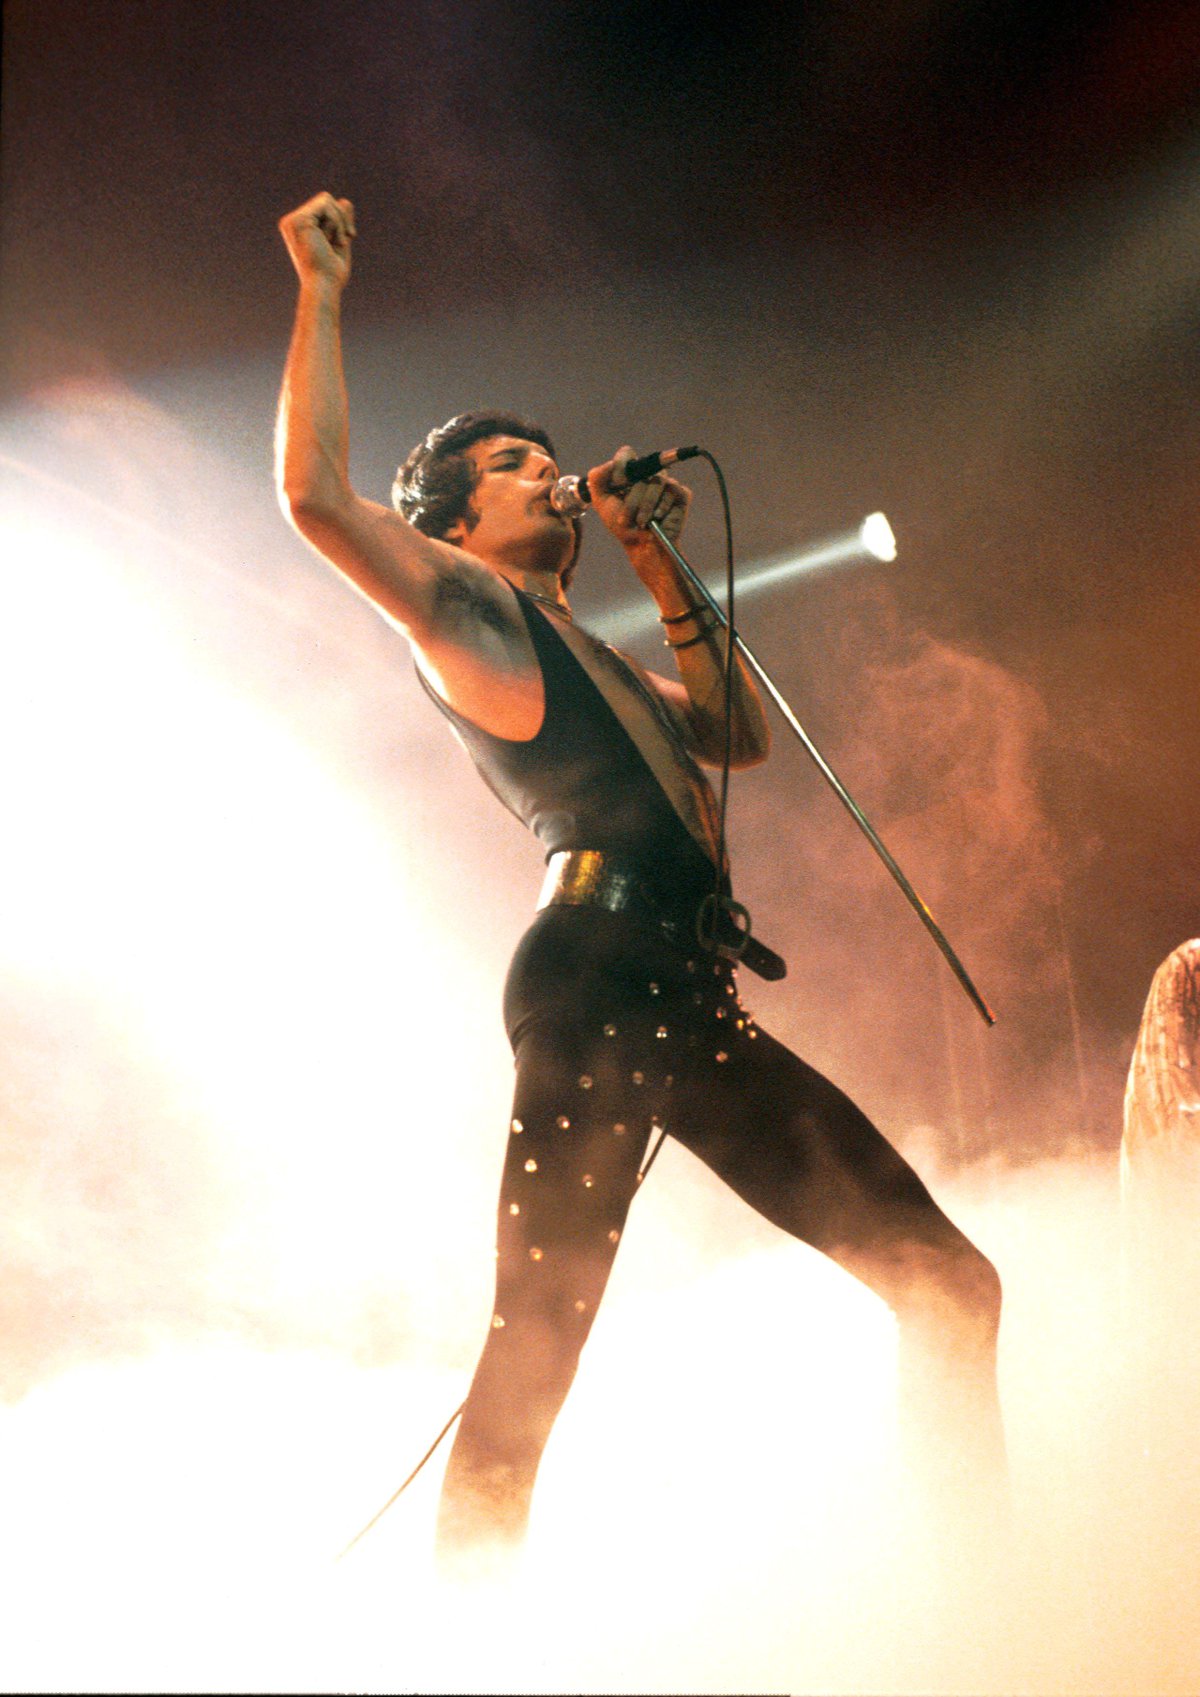 30 imágenes para recordar a Freddie Mercury a los 30 años de su muerte